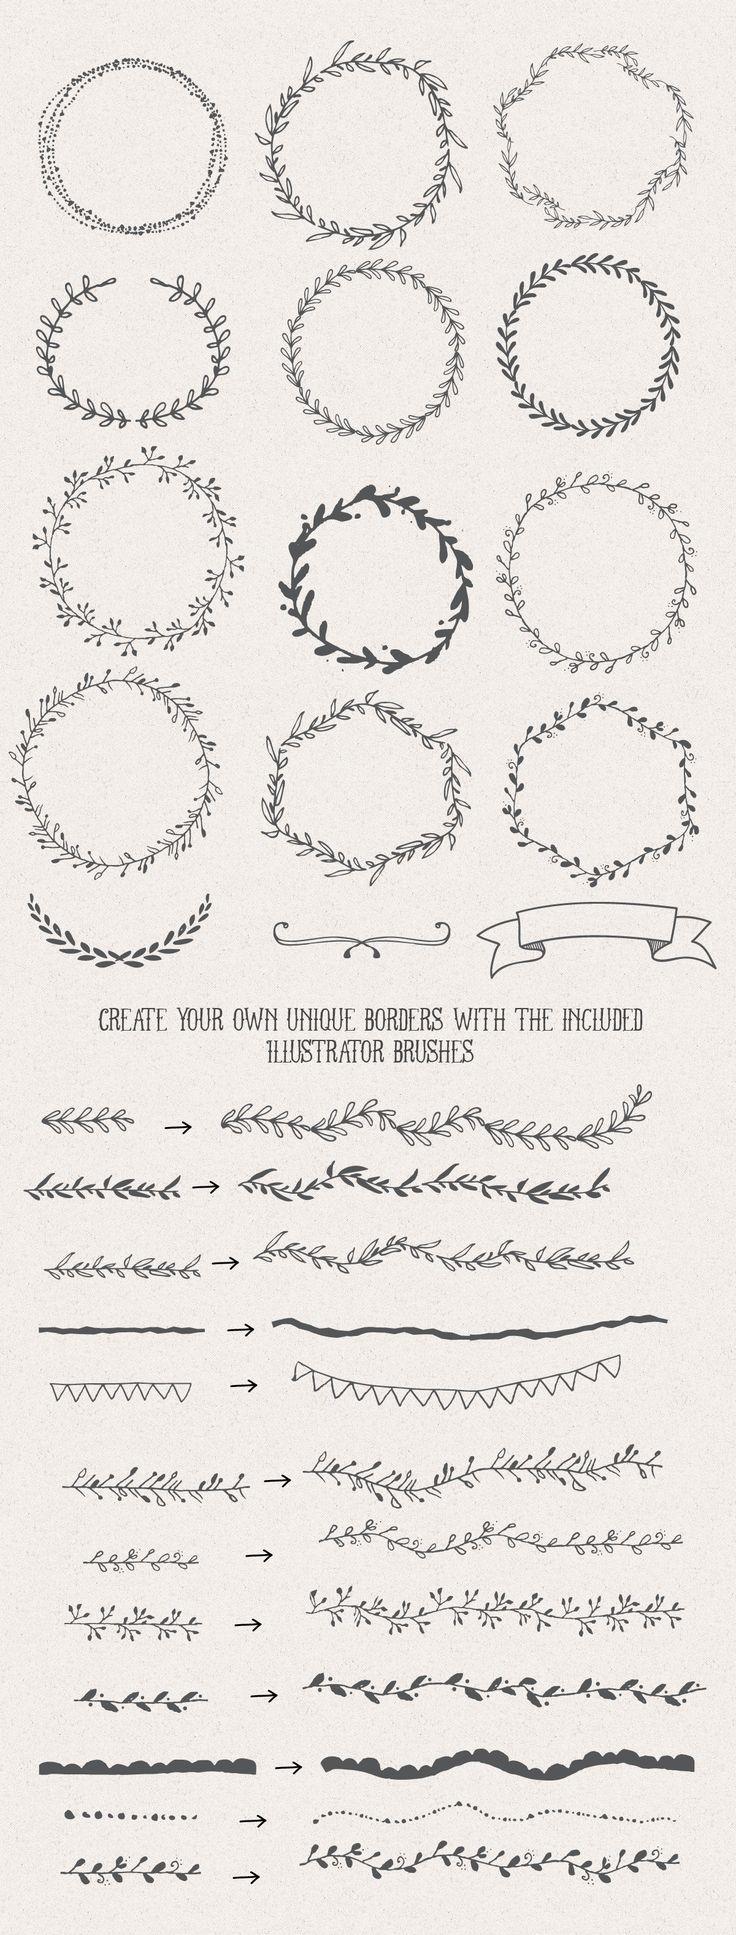 Hochzeit - The Handsketched Designers Kit